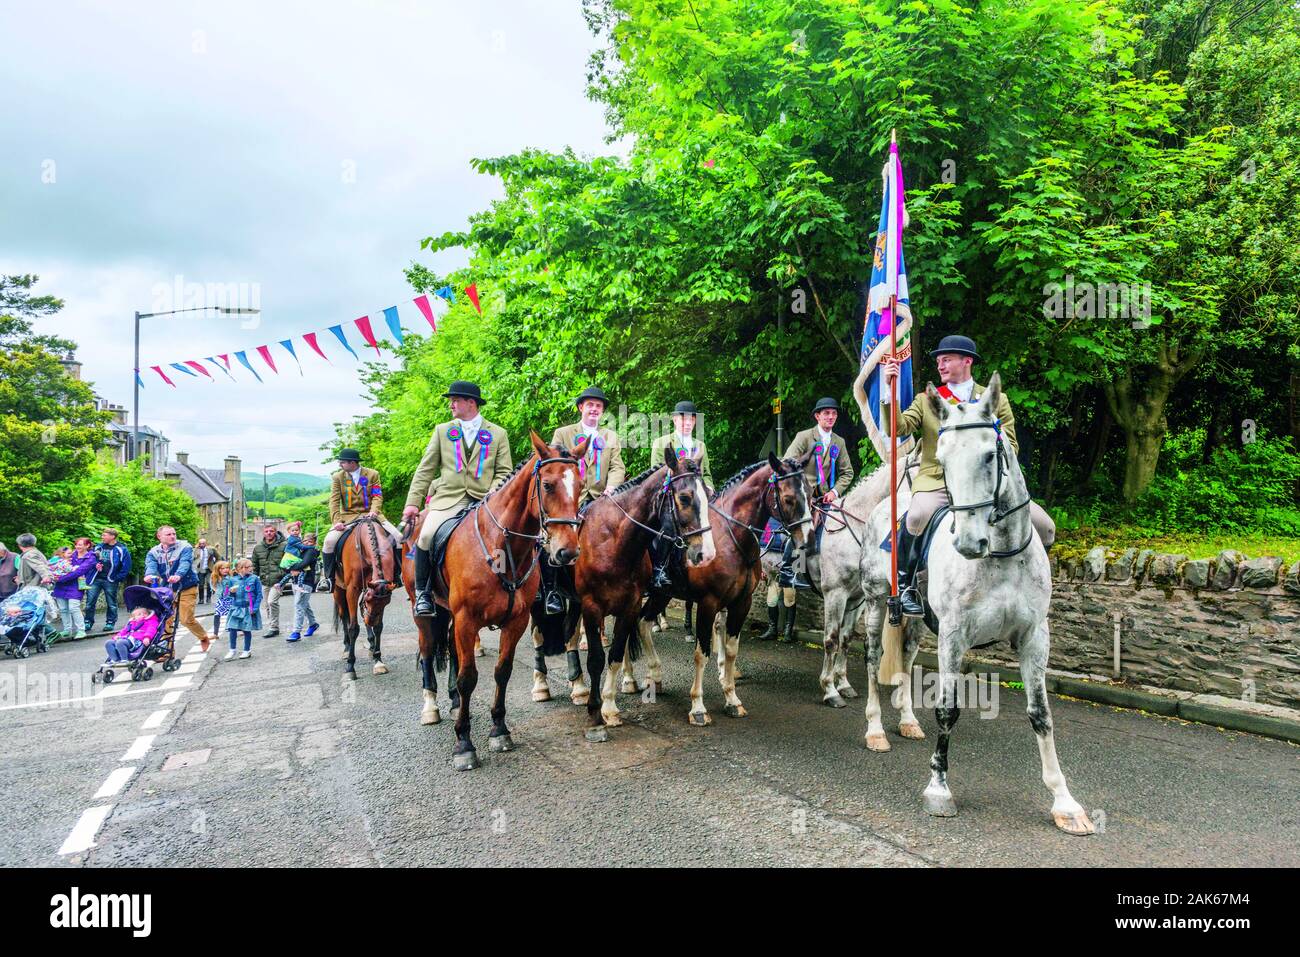 Selkirk: Common Ridings, jaehrliches Reit- und Pferdefestival in Gedenken an die Schlacht von Flodden (1513). Standartentraeger mit seiner Truppe, Sch Stock Photo